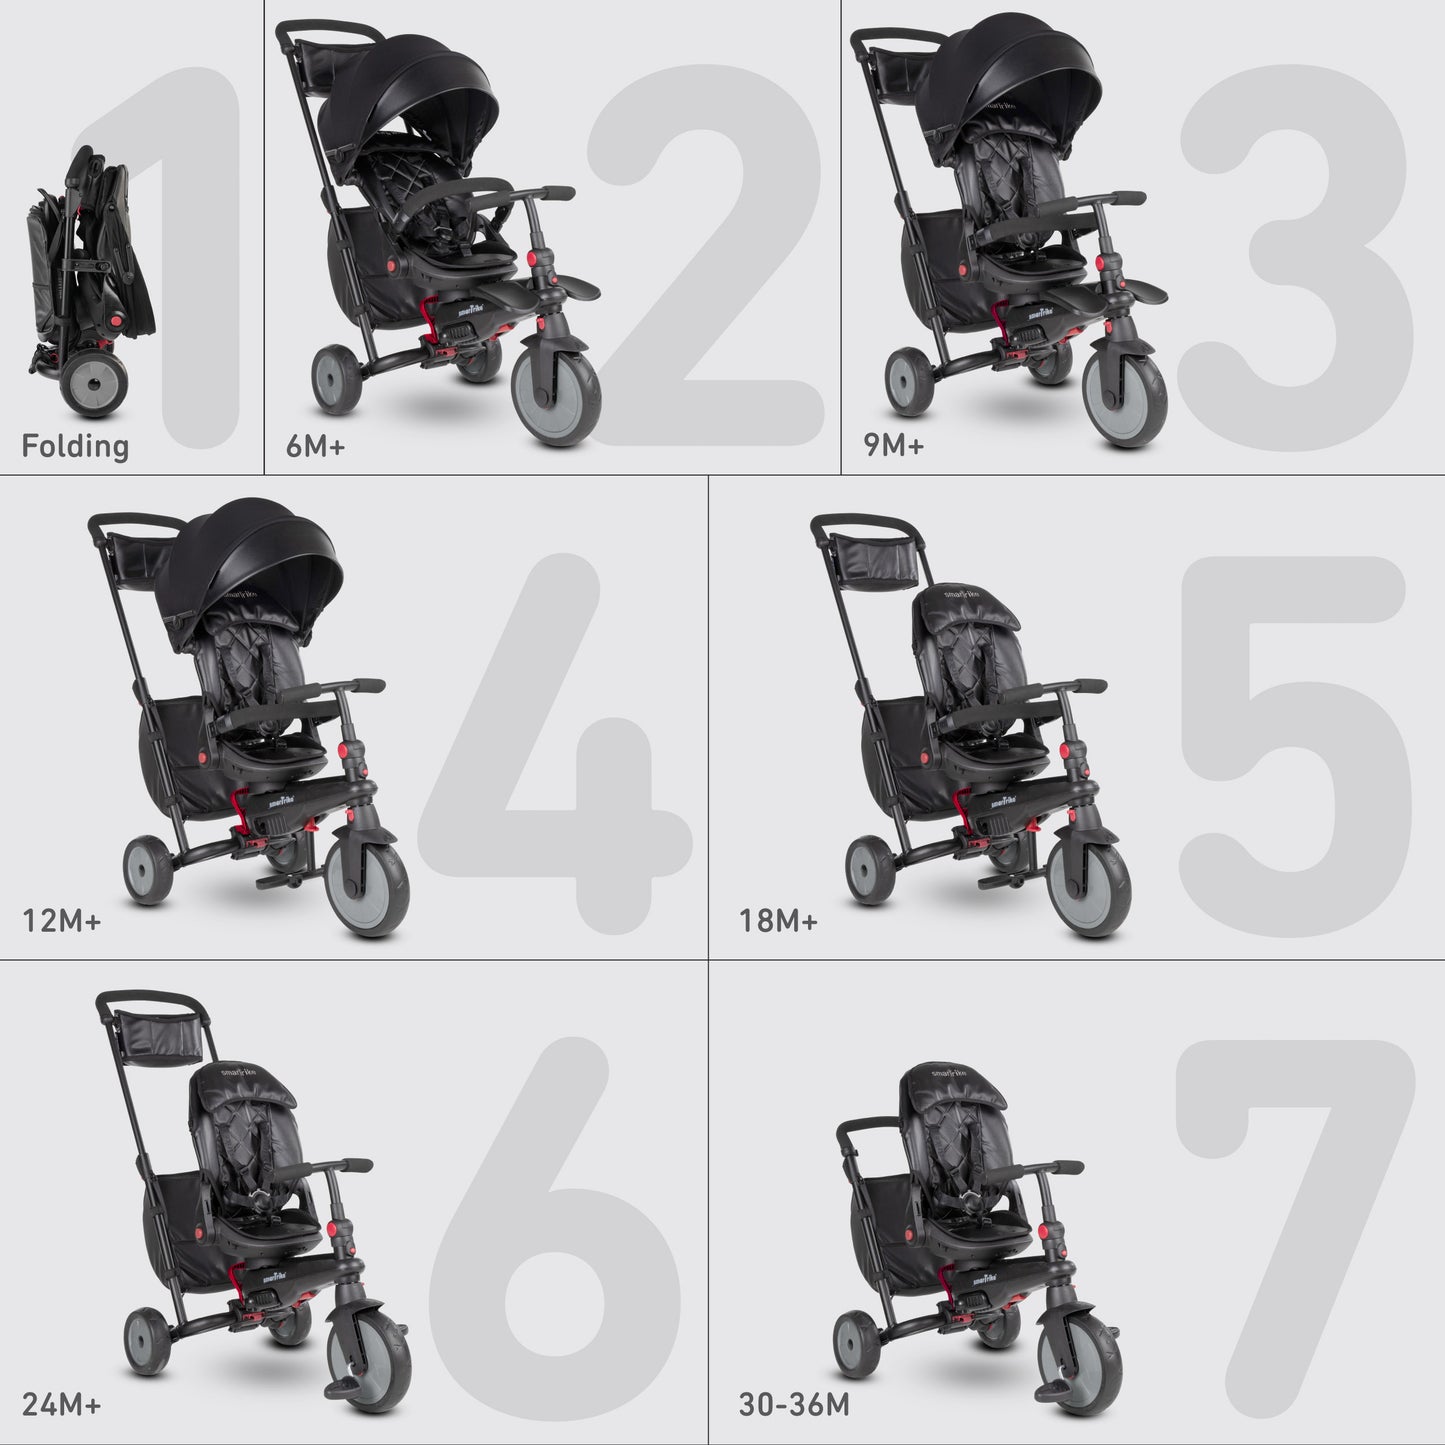 SmarTrike STR7 Folding Stroller Trike (Pre-Order)